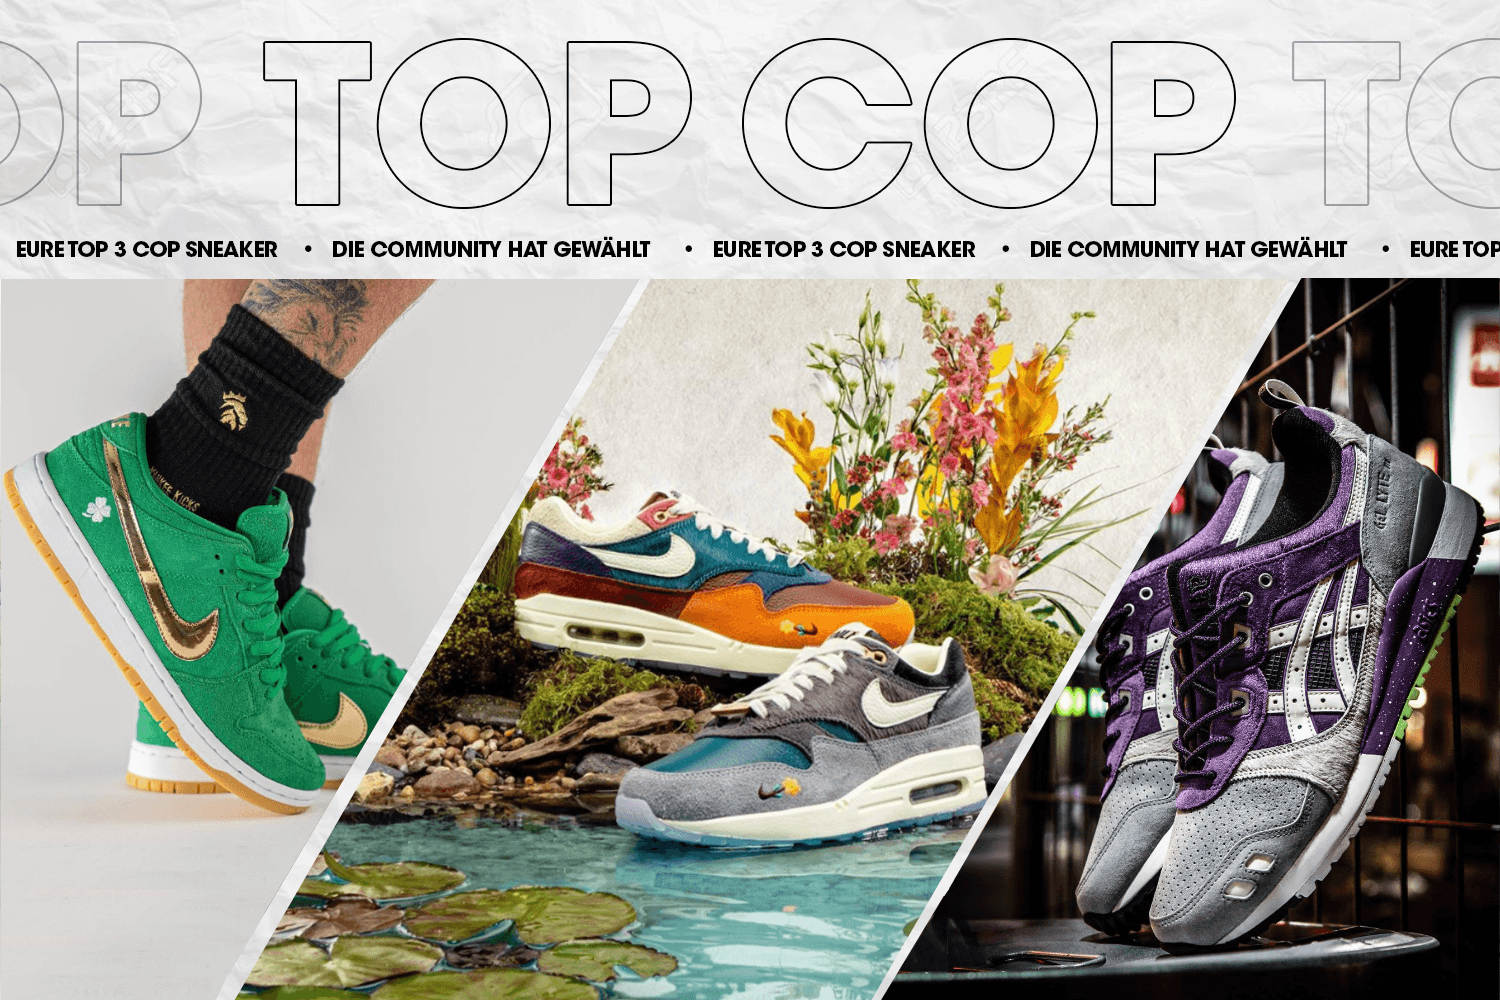 Die Community hat gewählt: Eure Top 3 Cop Sneaker Woche 26